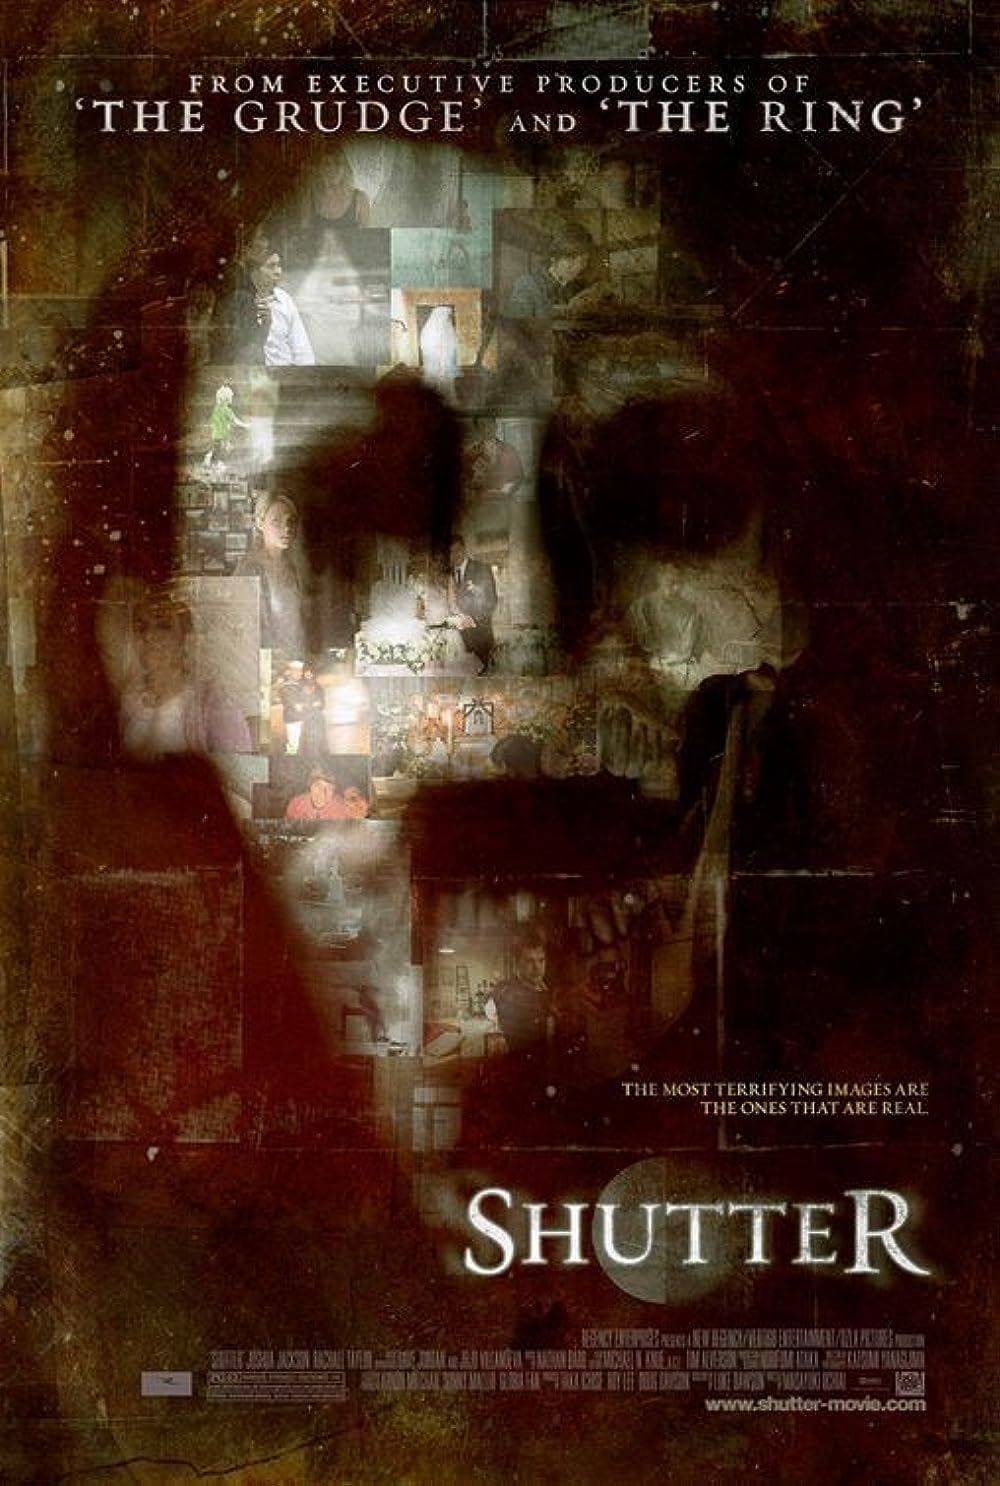 FULL MOVIE: Shutter (2008)